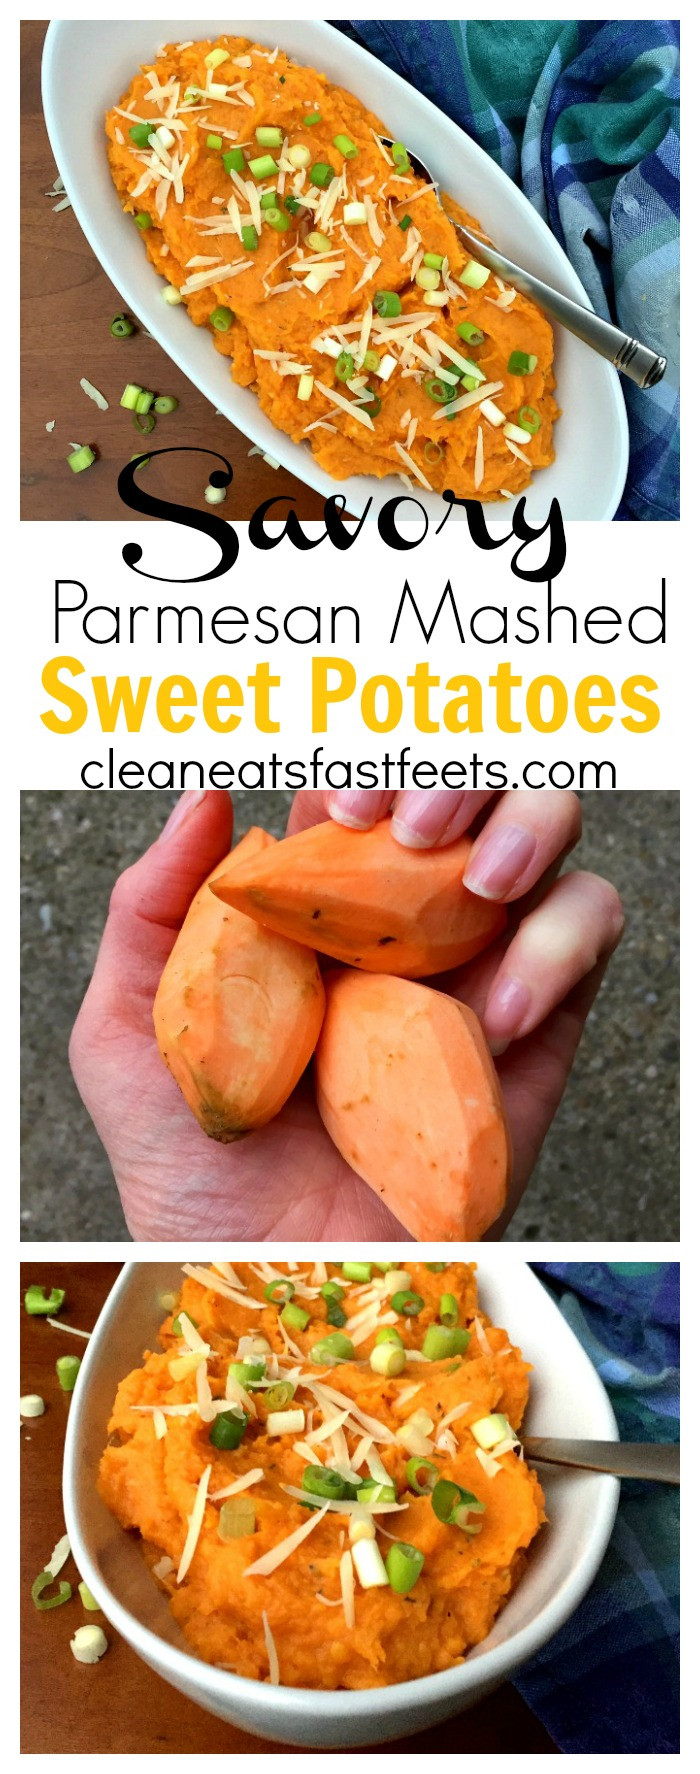 Mashed Sweet Potatoes Thanksgiving
 Savory Parmesan Mashed Sweet Potato Recipe Clean Eats